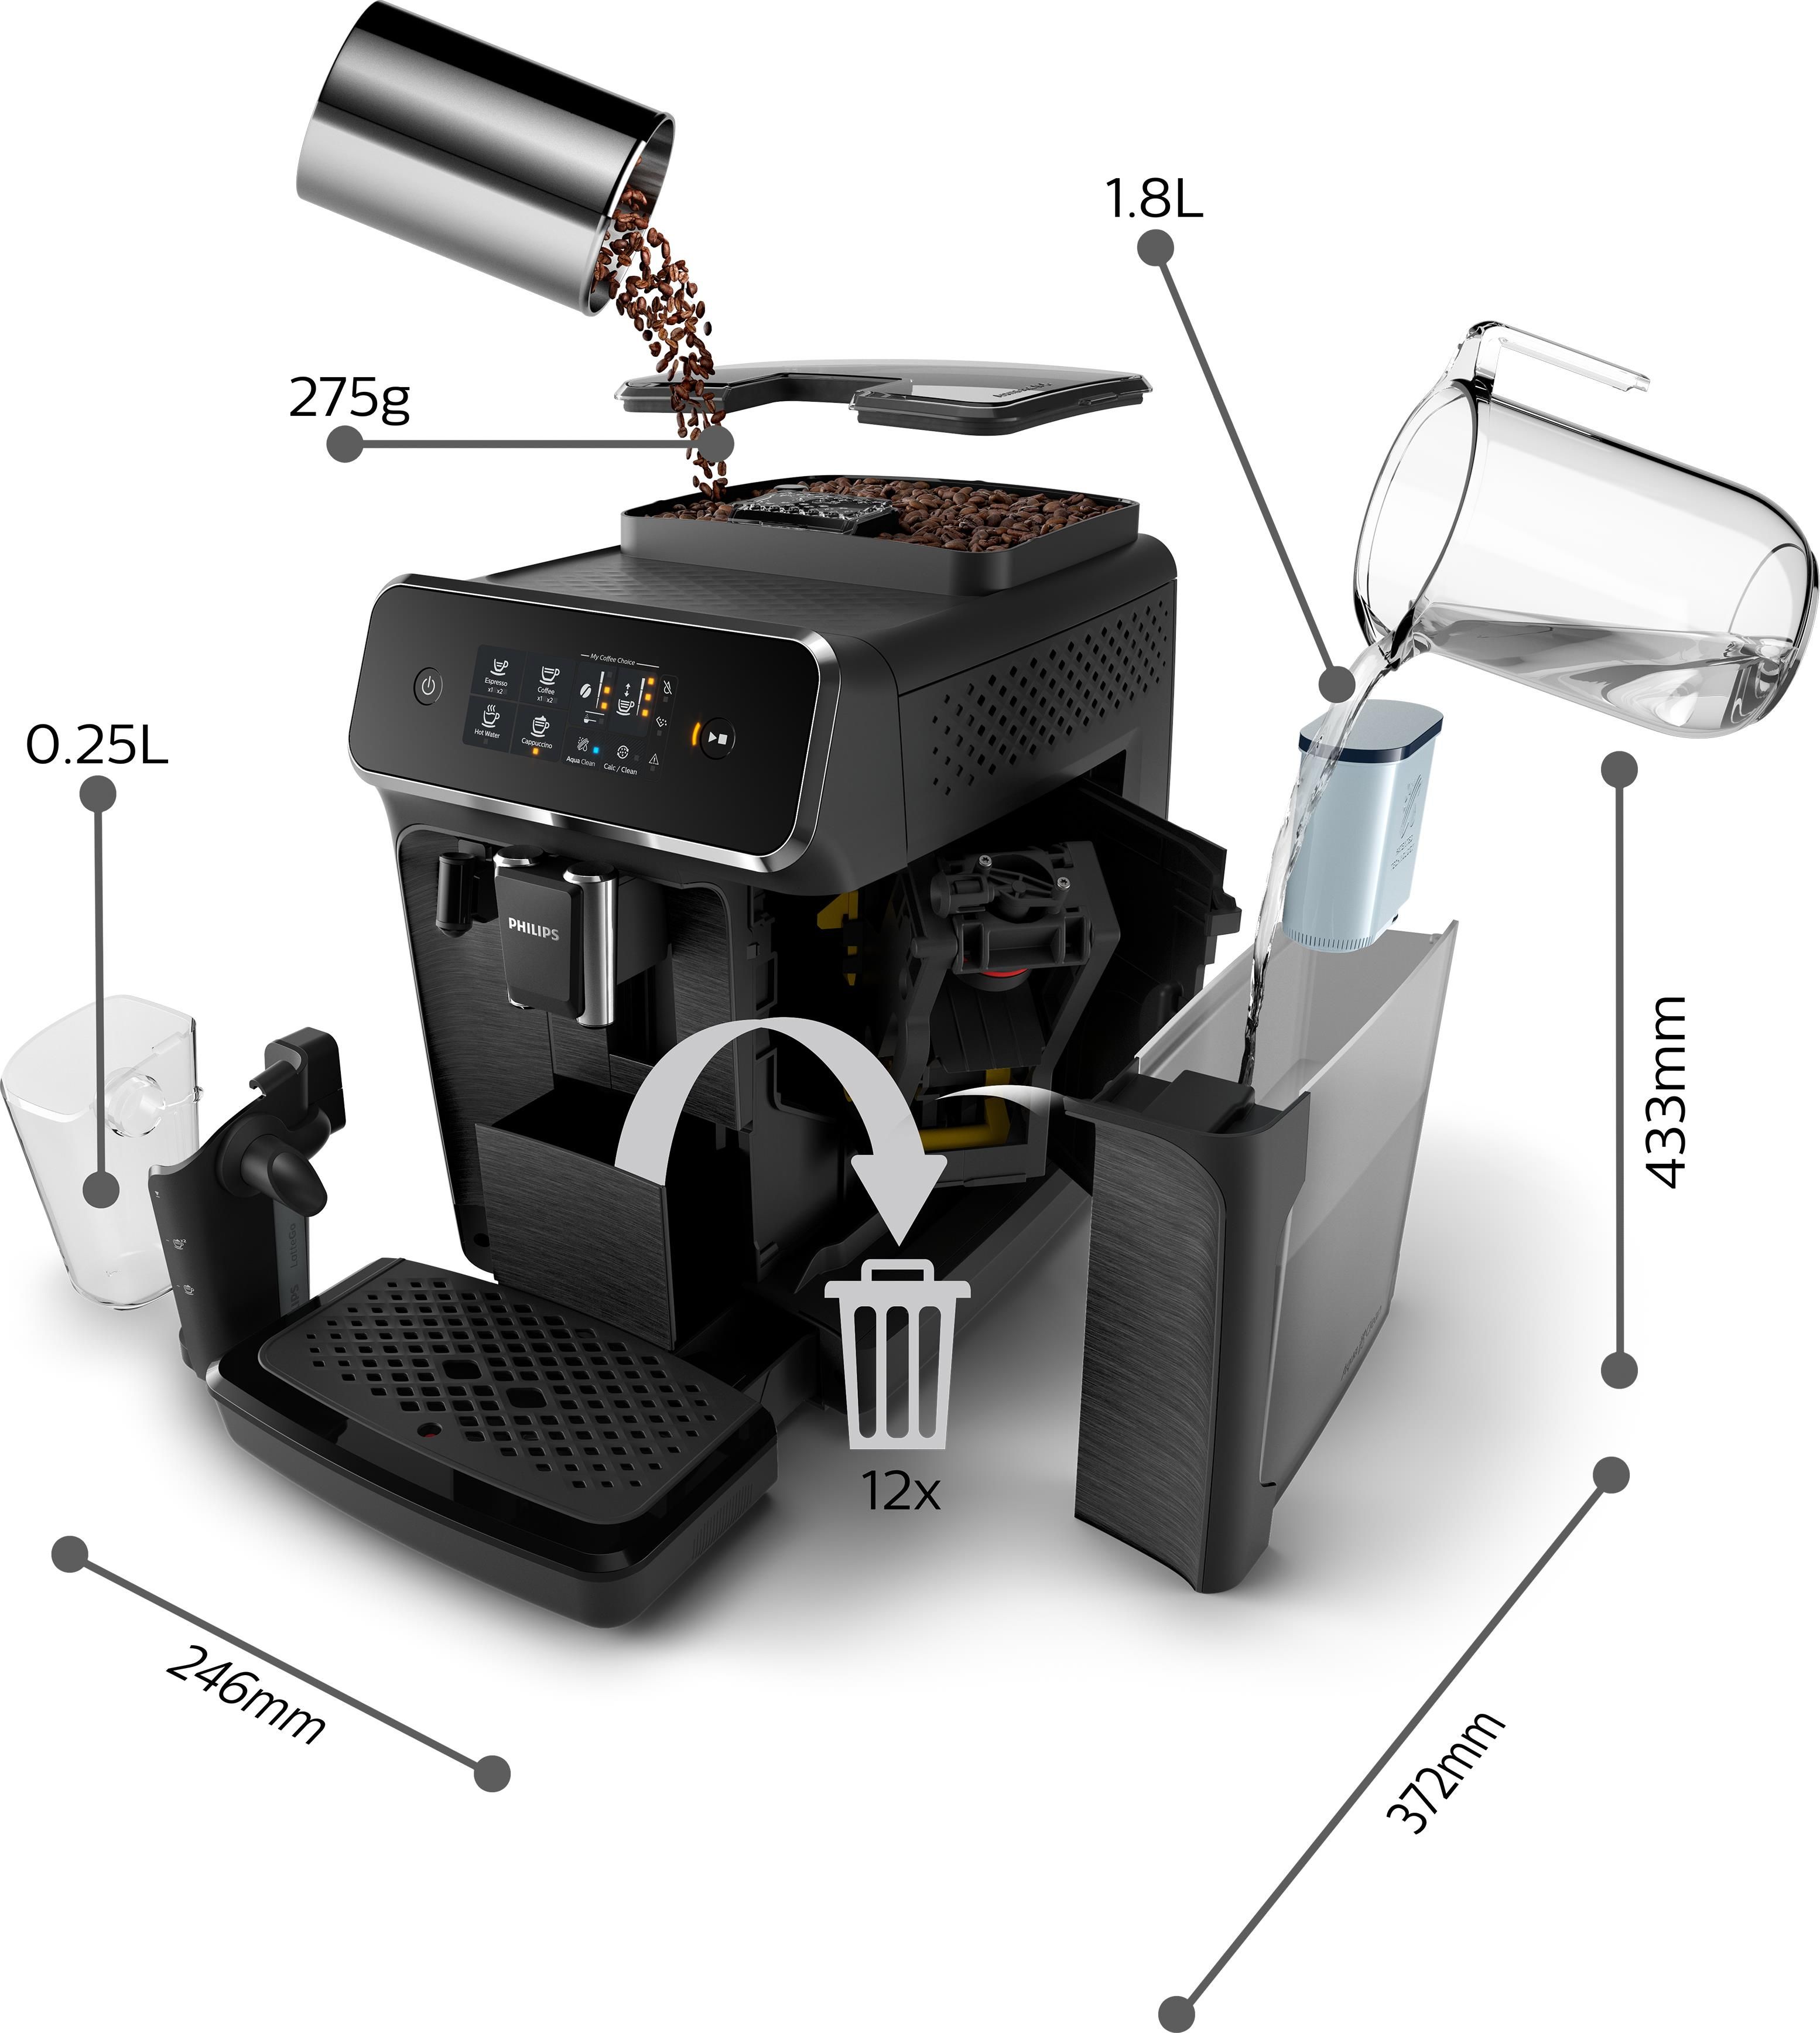 Macchina caffe' espresso automatica Philips EP2230/10 con caraffa